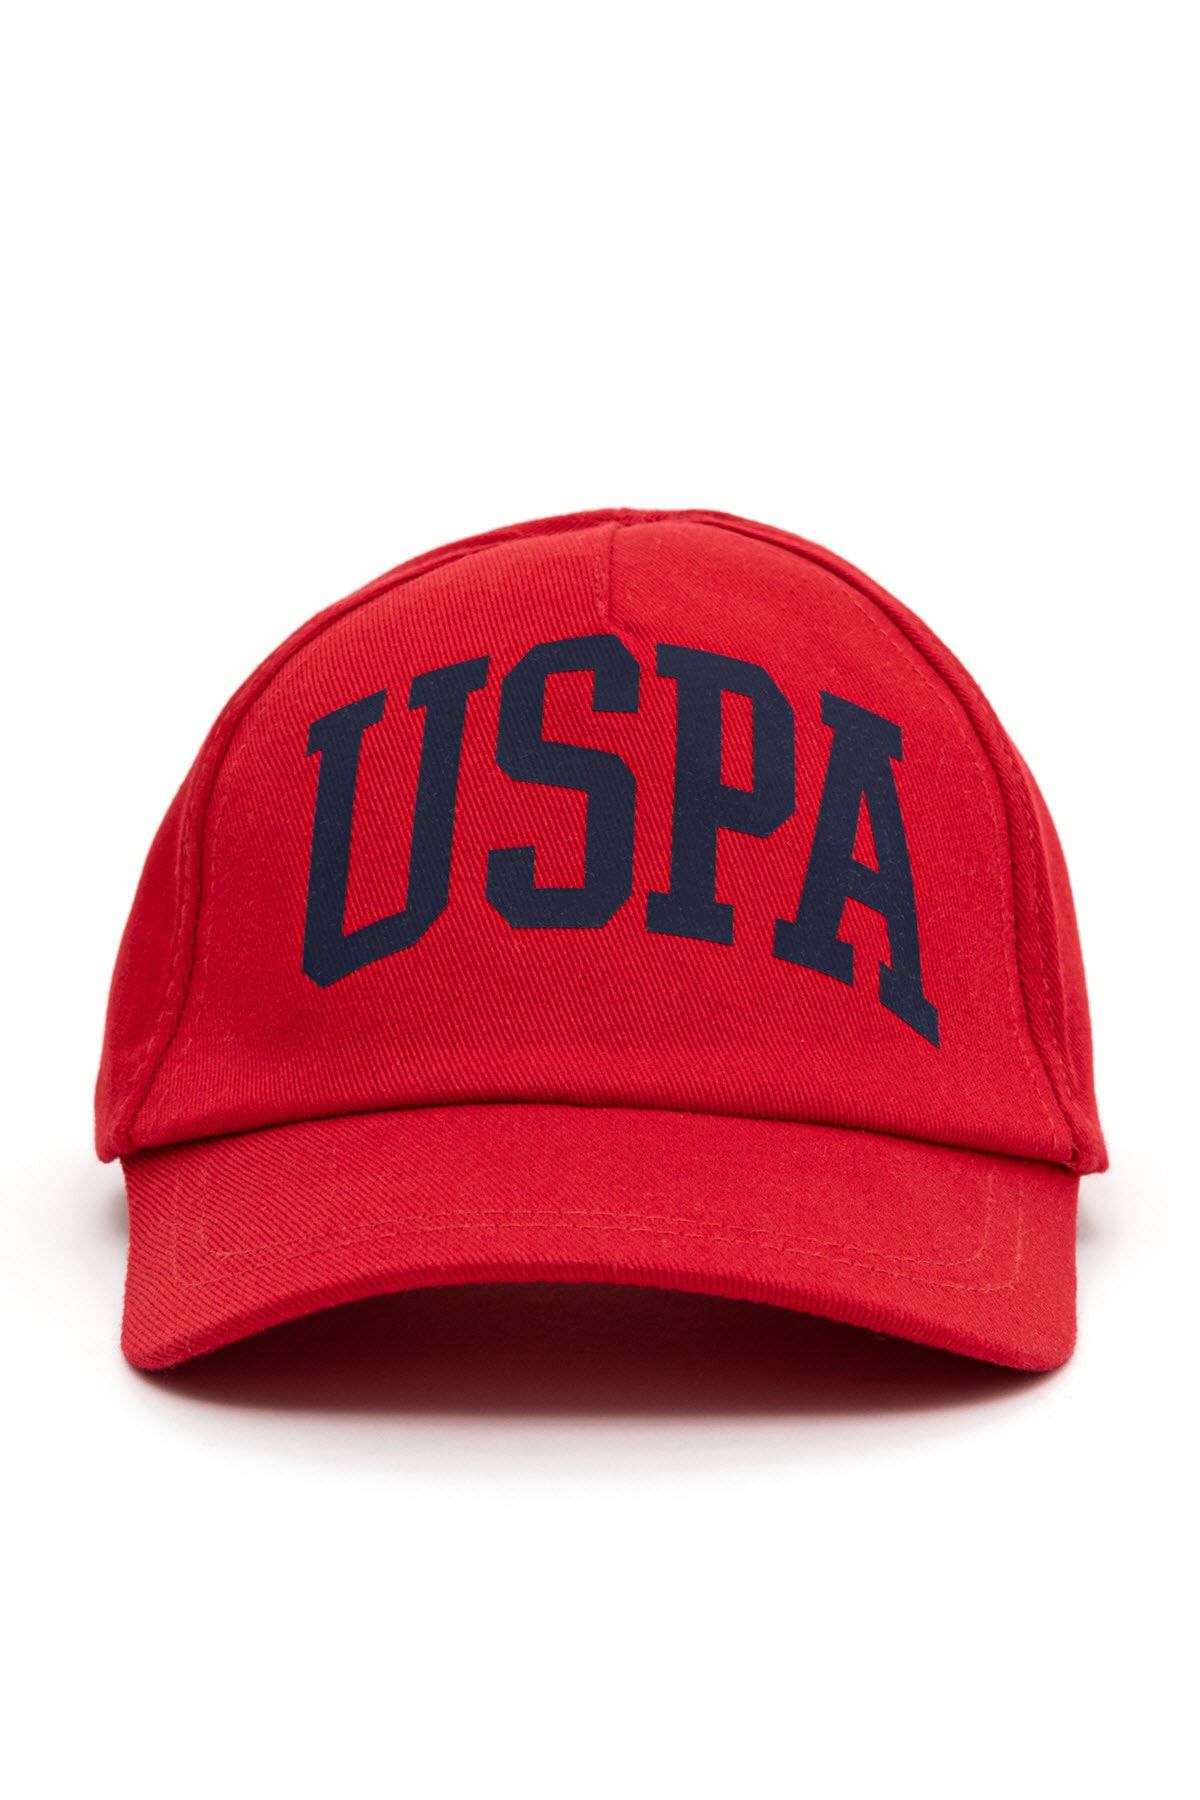 U.S. Polo Assn. کلاه